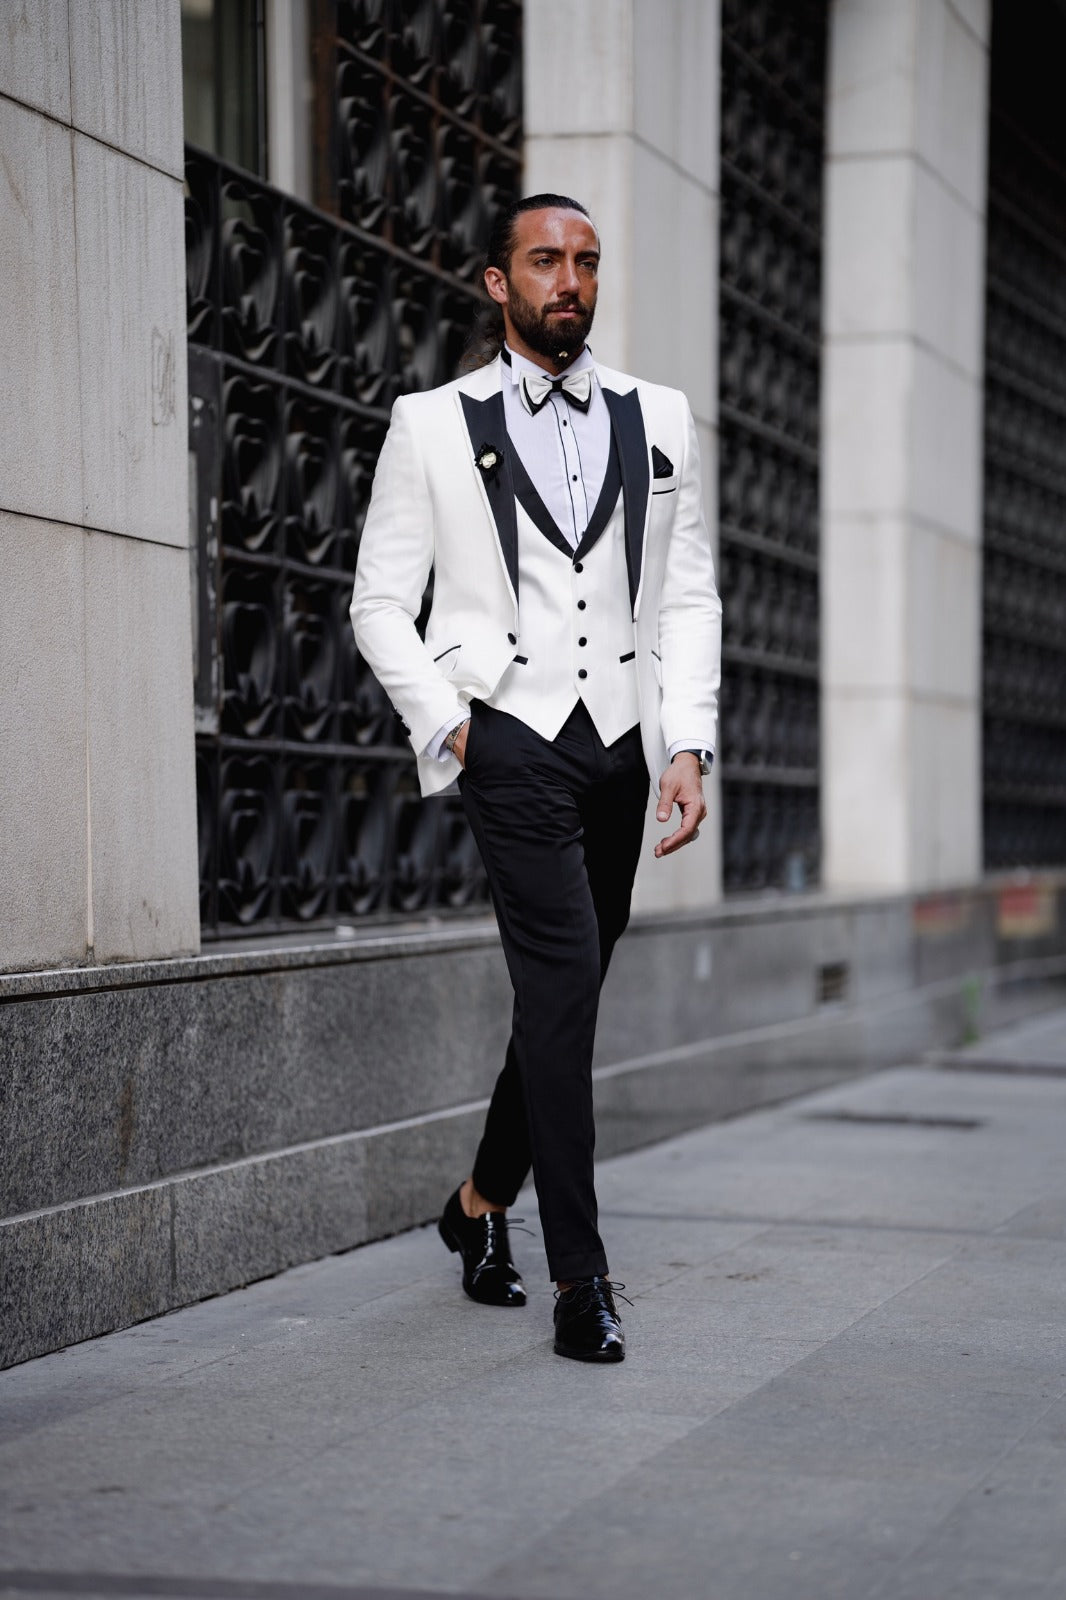 Satin Collar Special Design Suit  - White